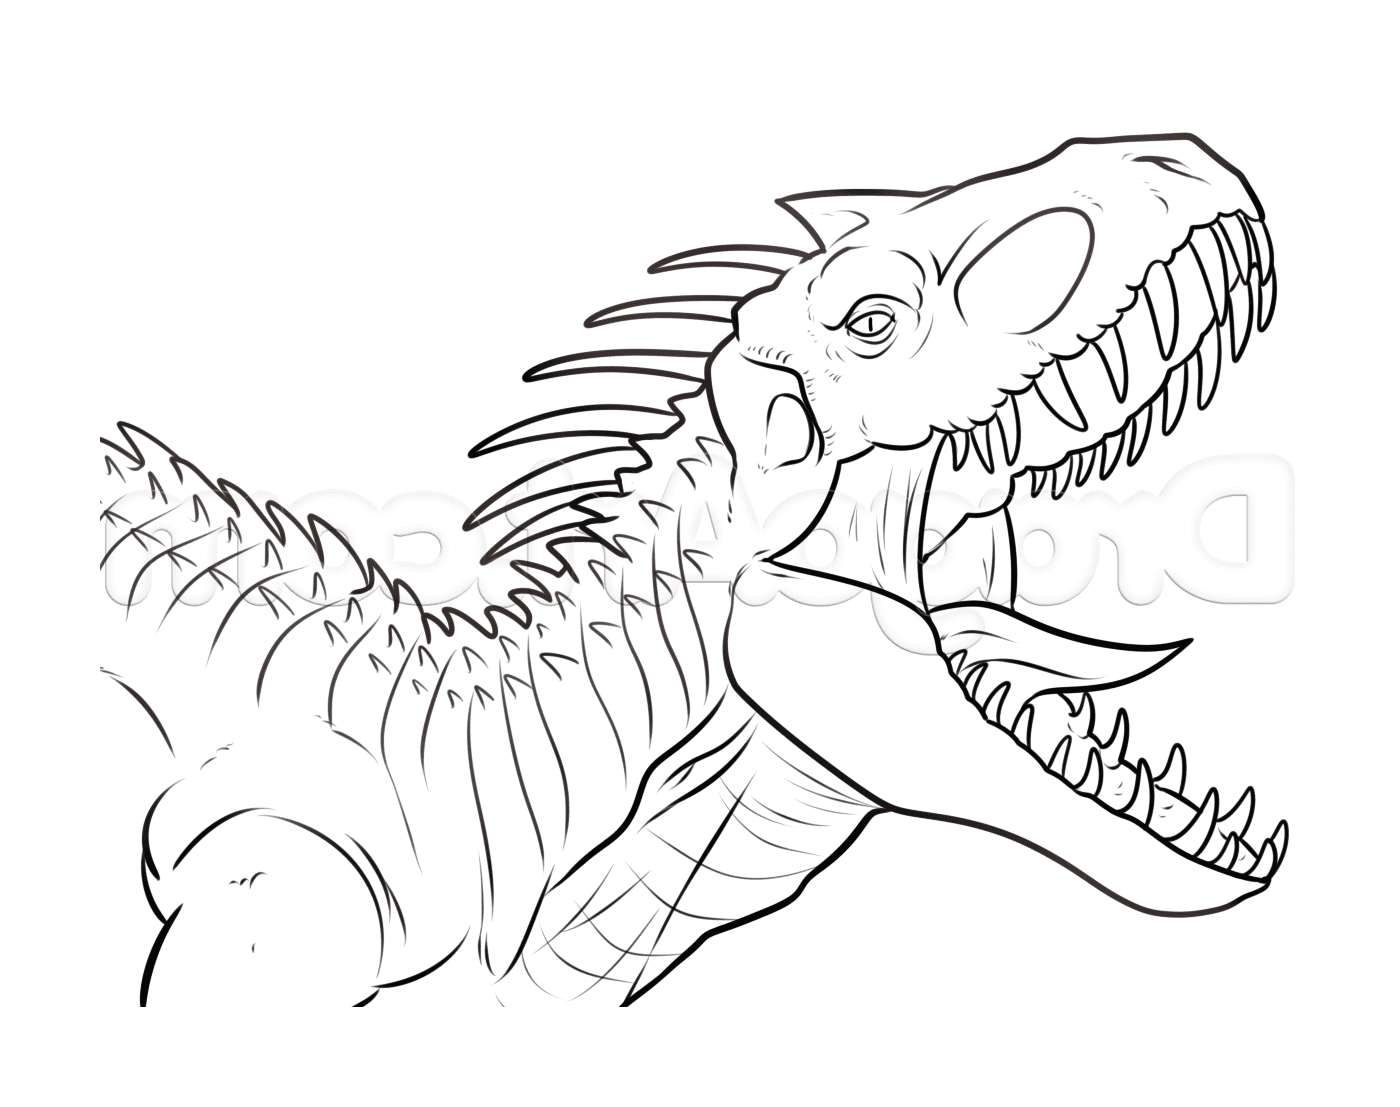  Indominus Rex beängstigend aus Jurassic Park 